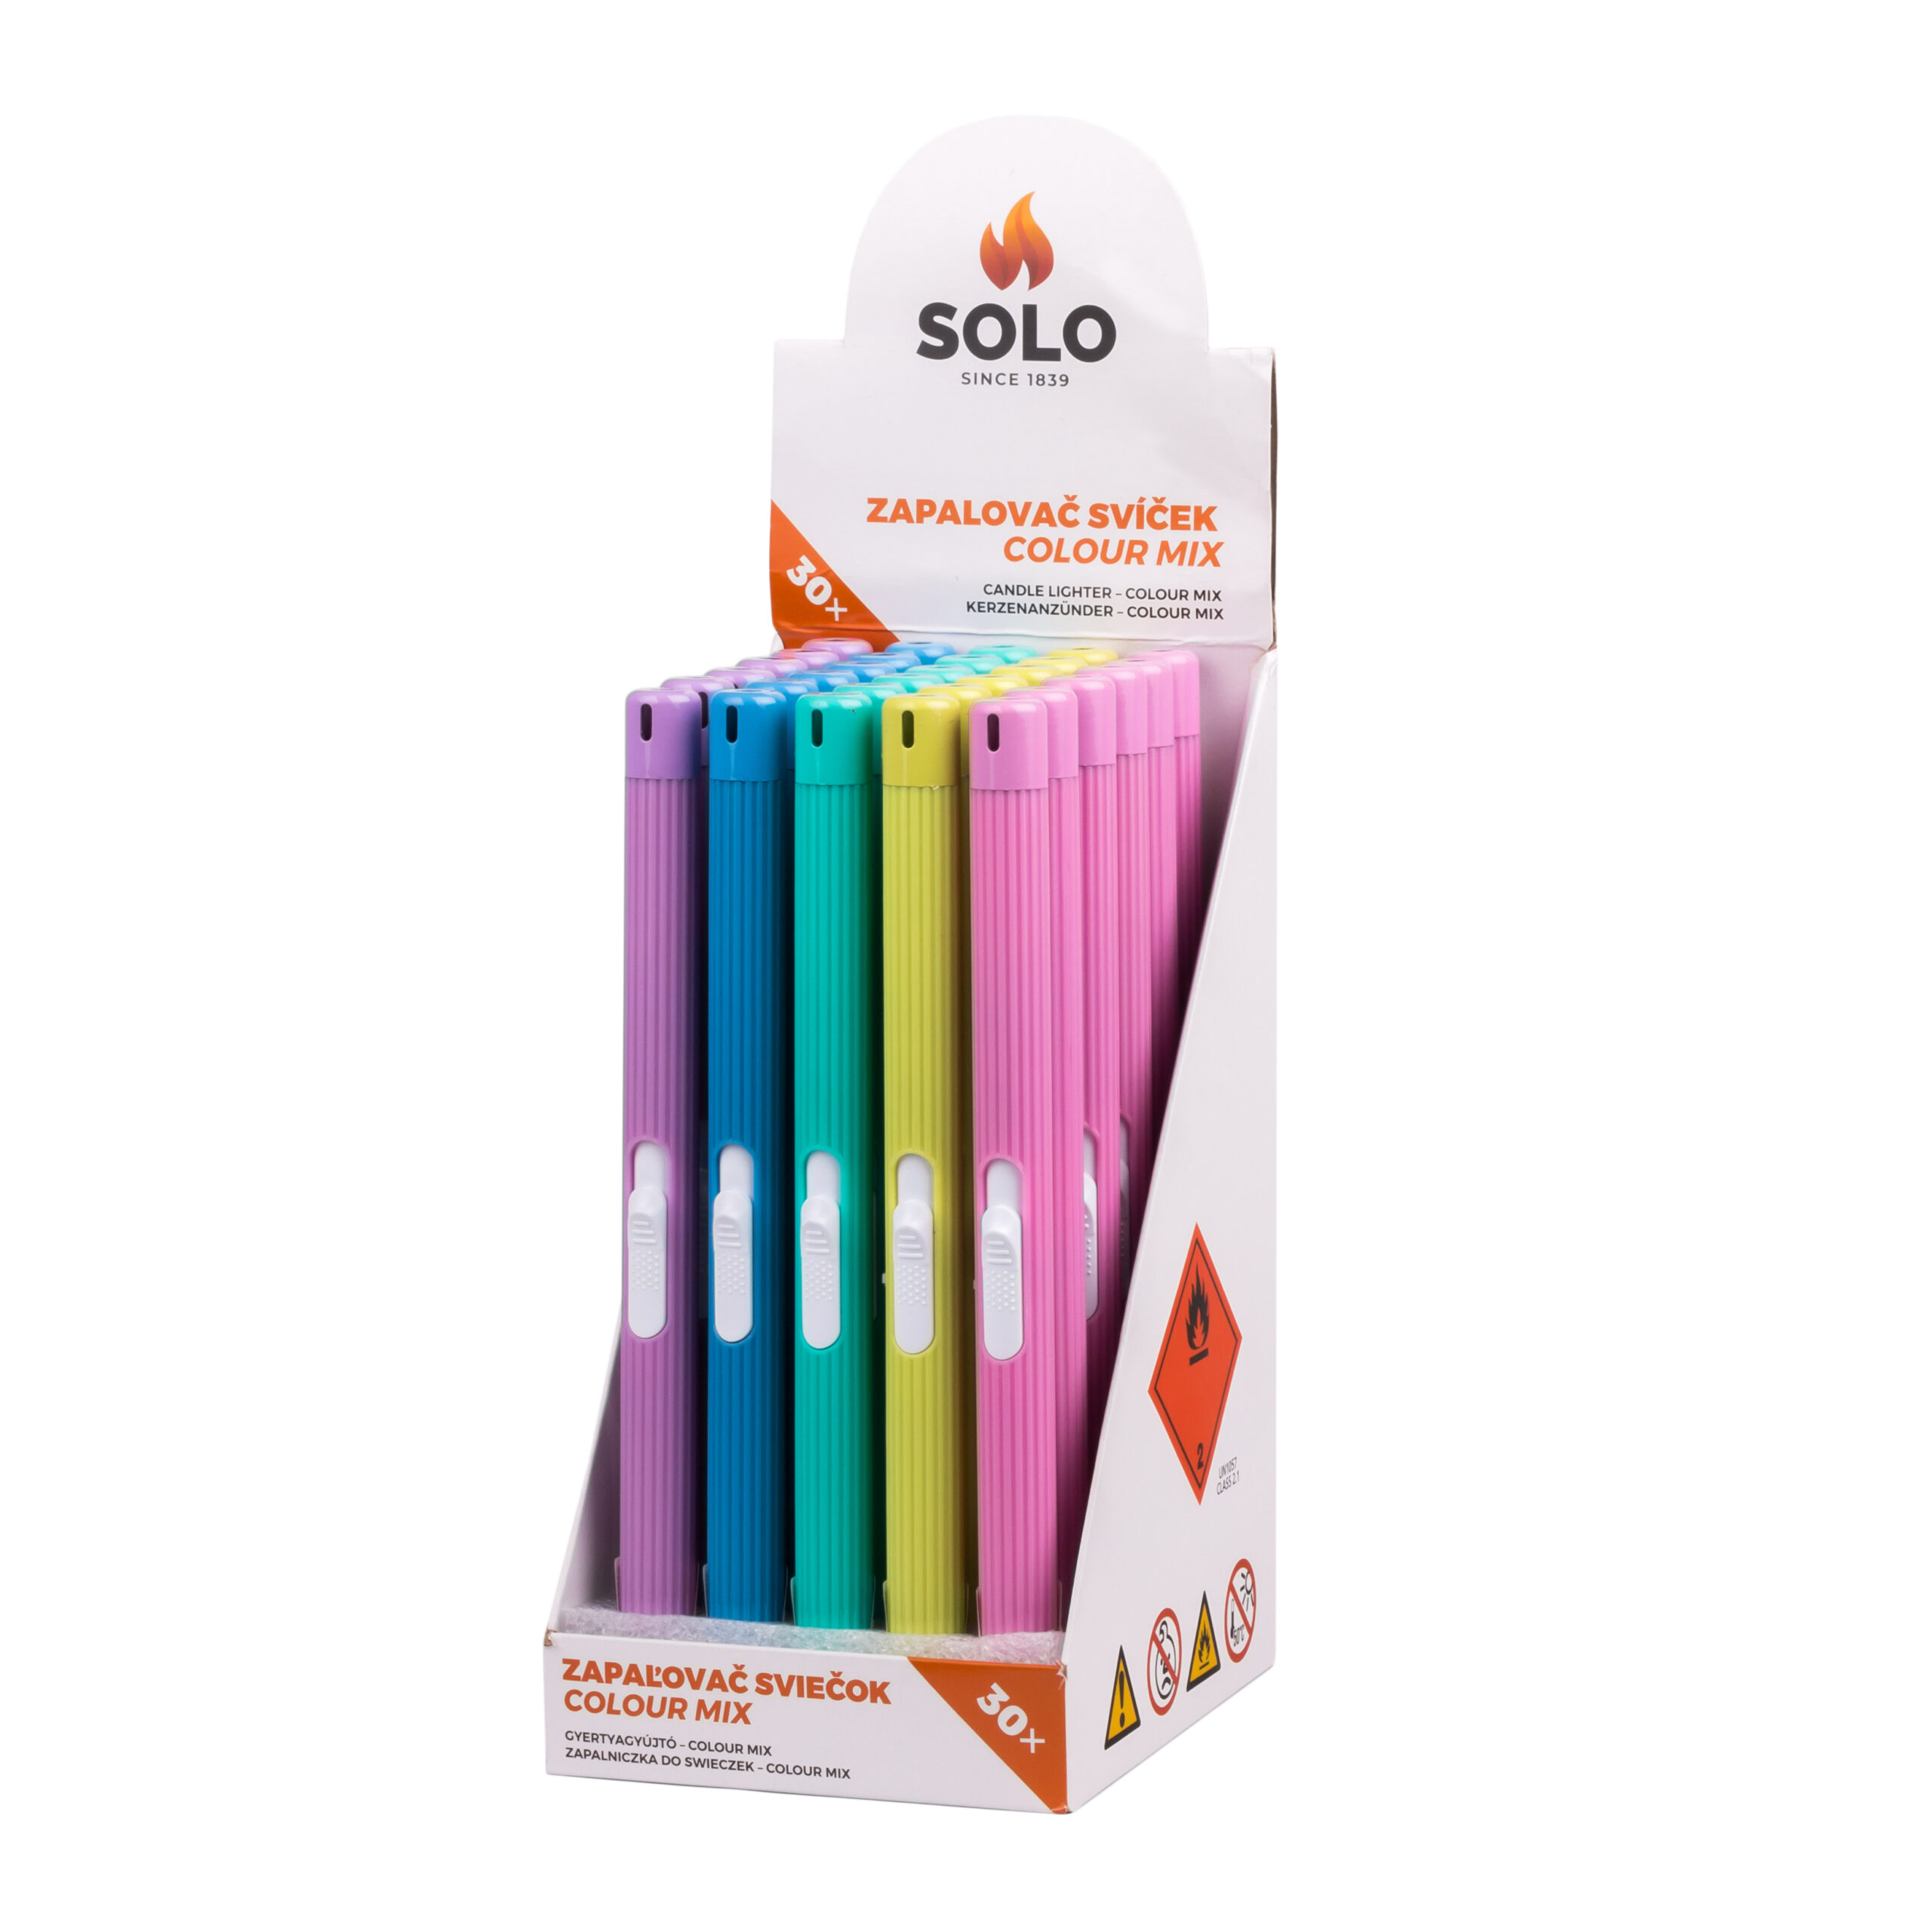 SOLO zapalovač svíček colour mix (21 cm)